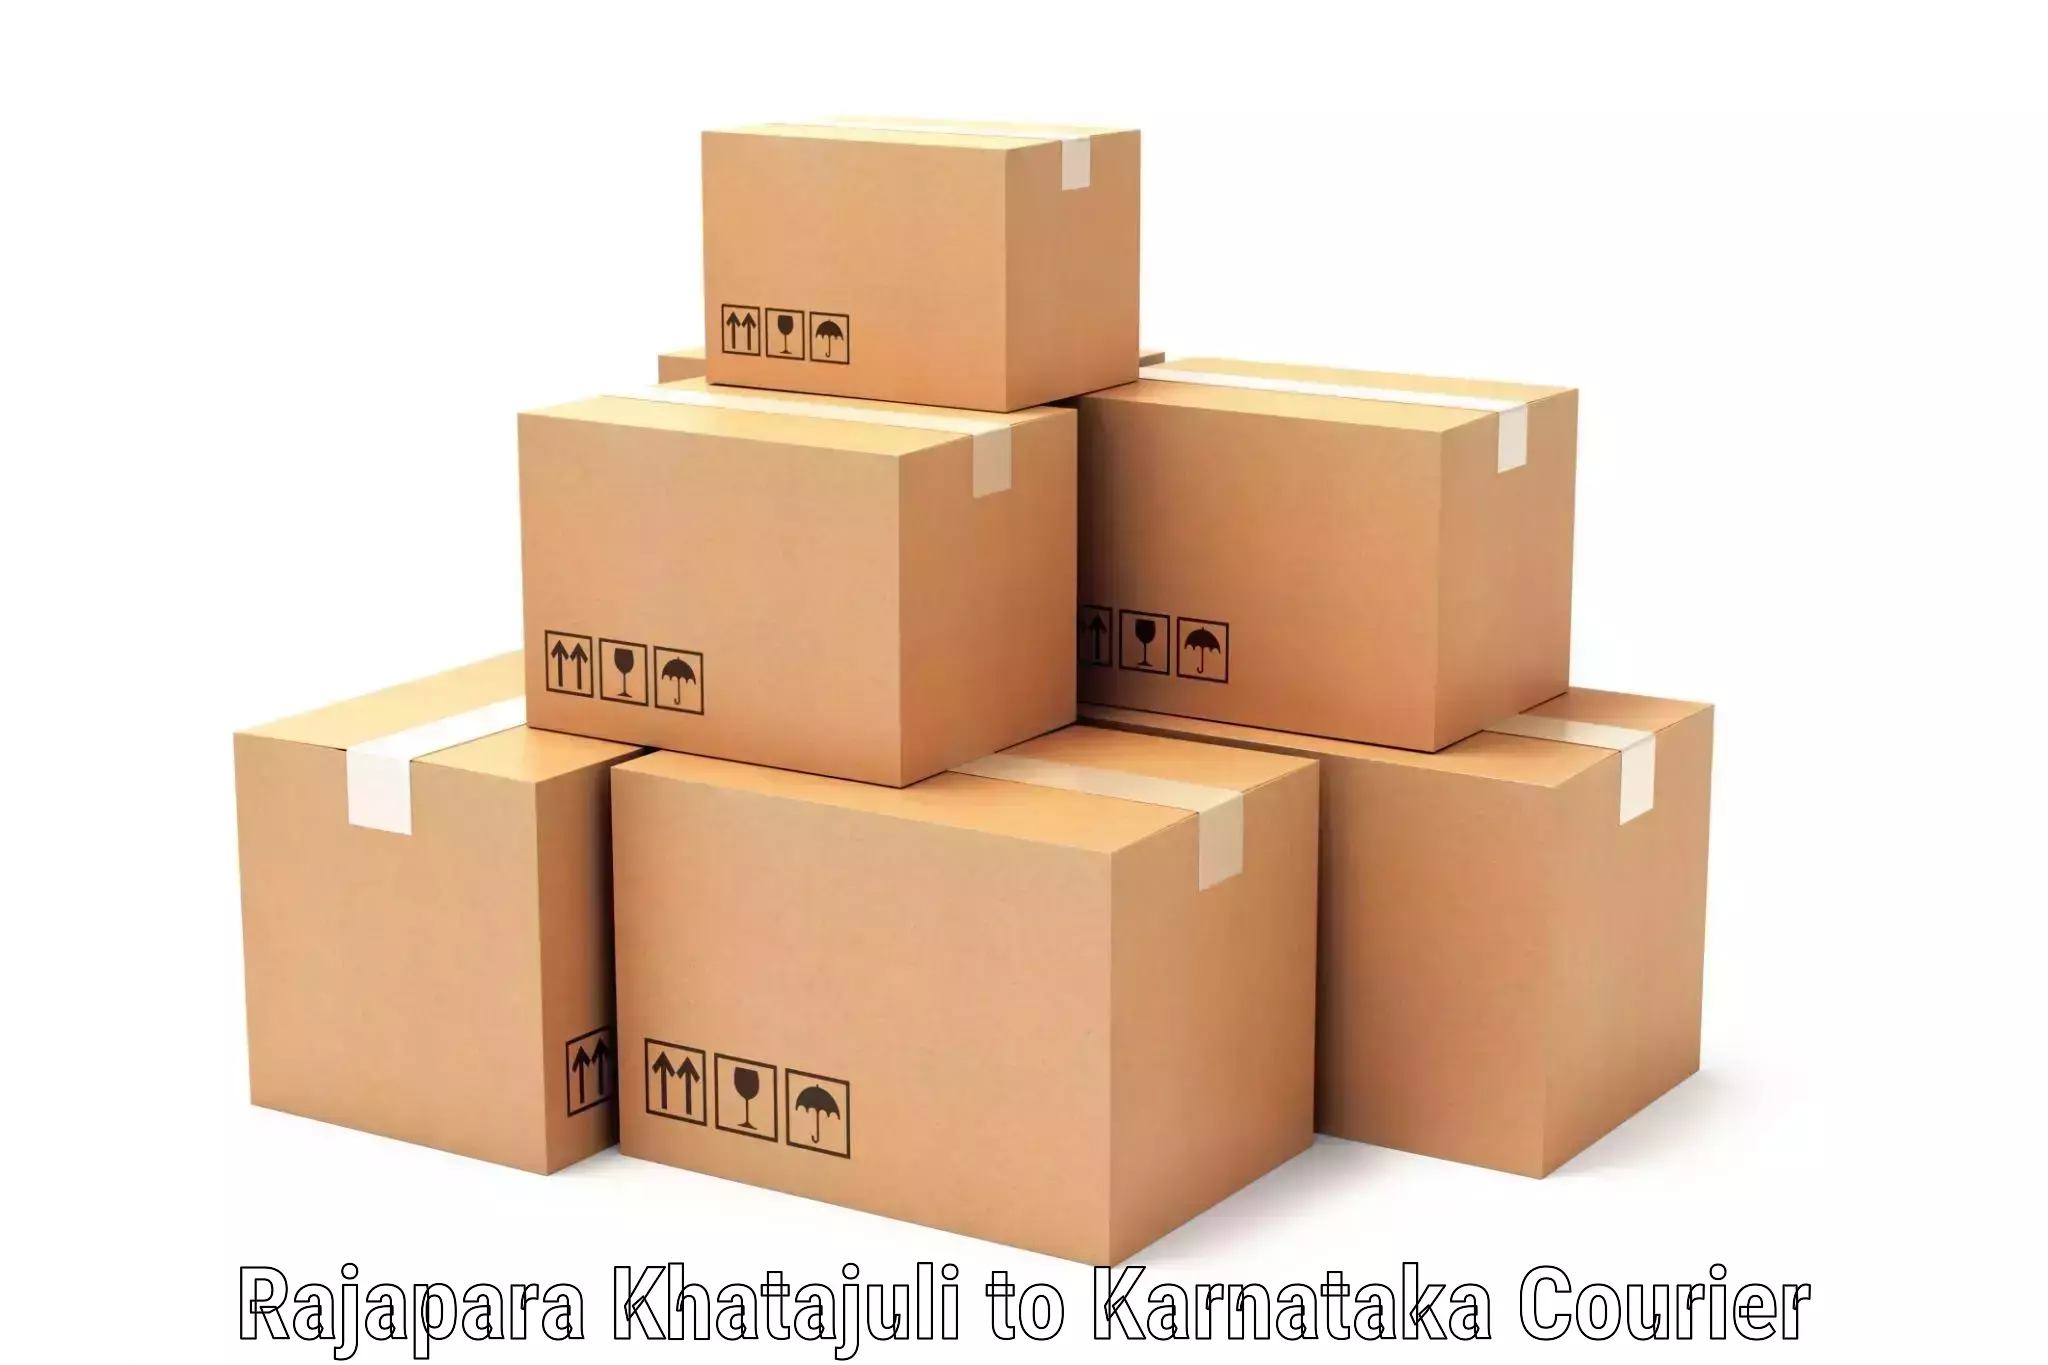 Urgent courier needs Rajapara Khatajuli to Laxmeshwar